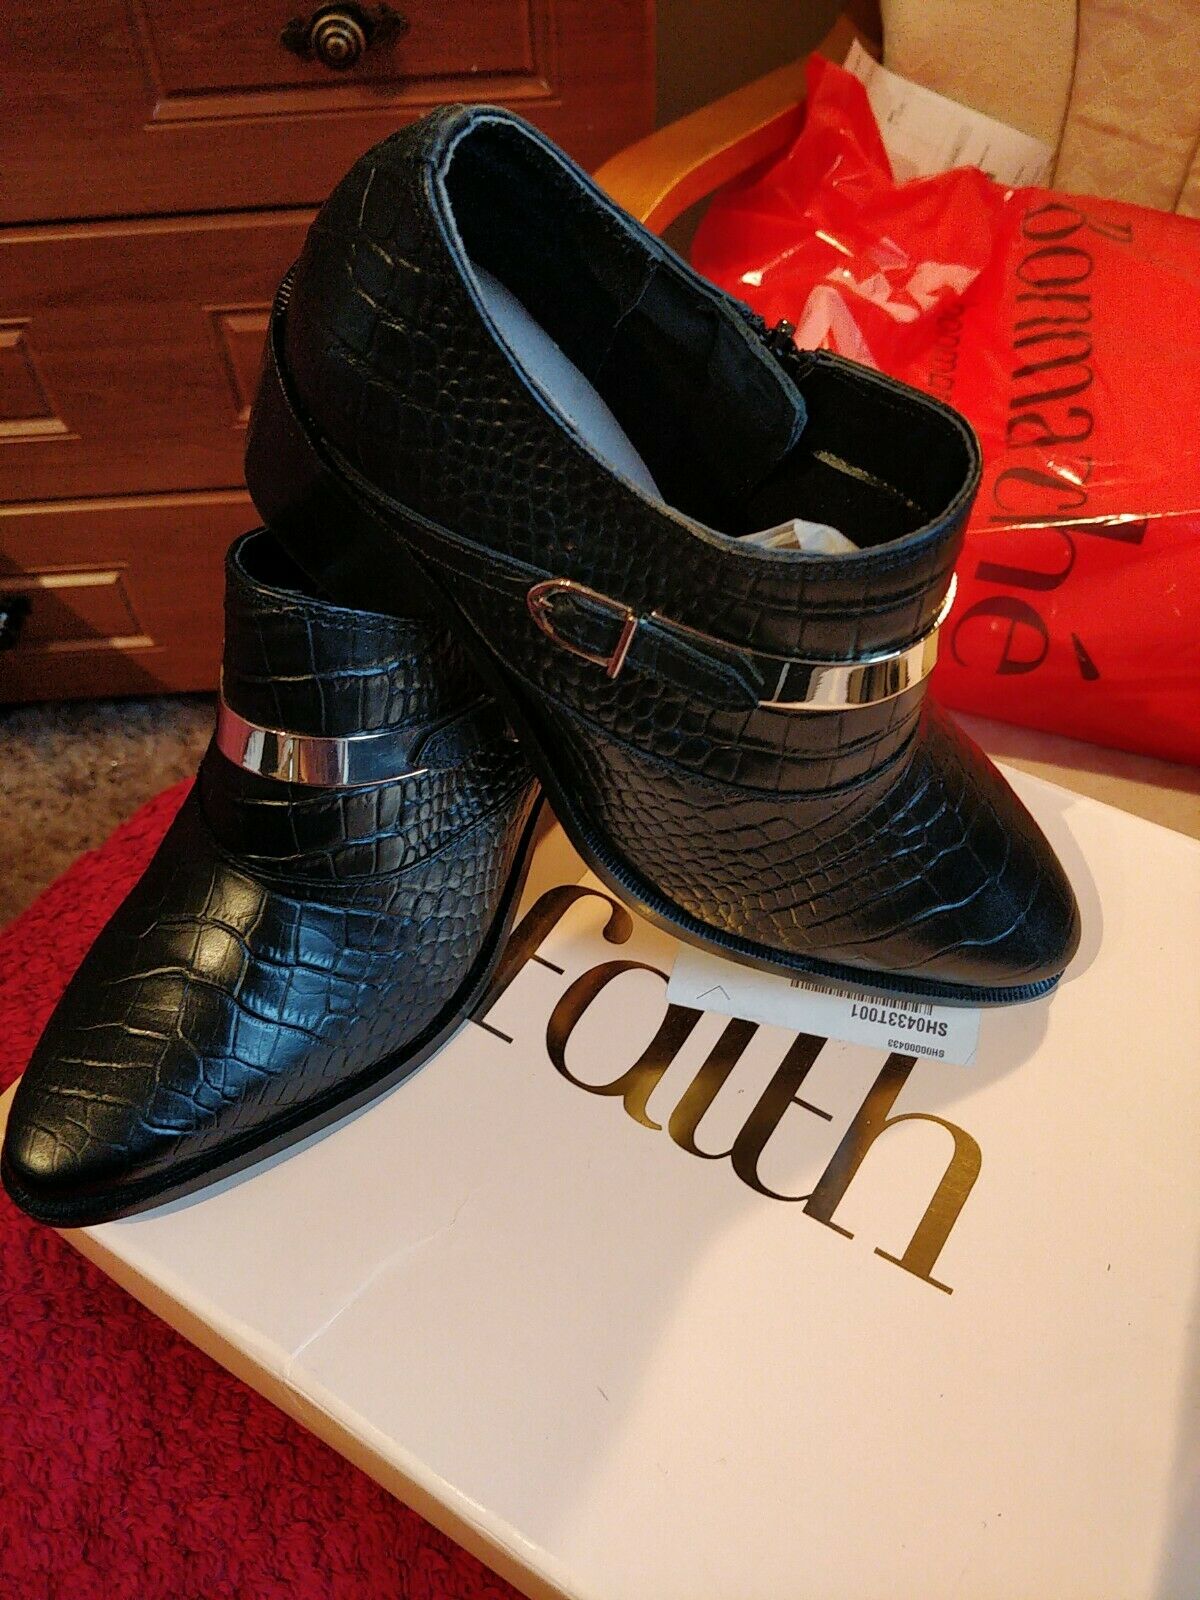 FAITH Brand New Black Crocodile Ankle Boots Size 3